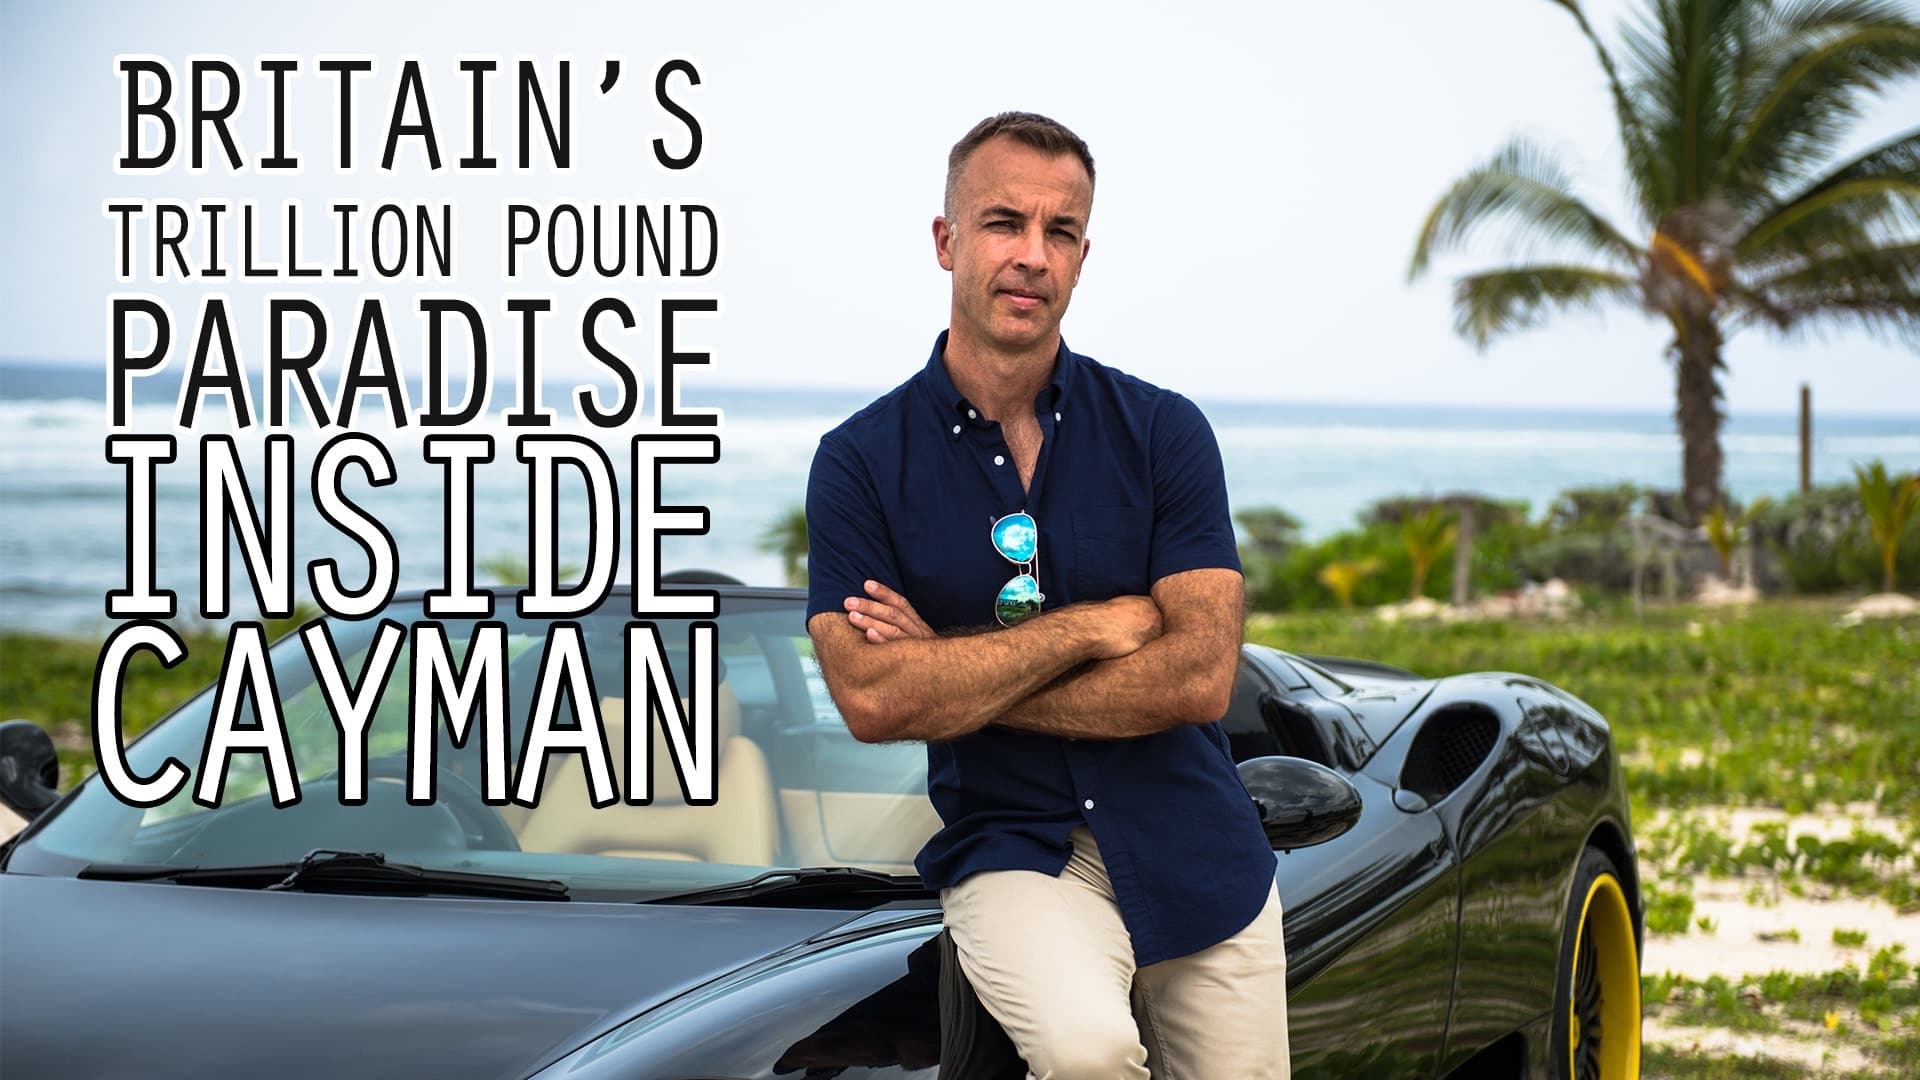 Britain's Trillion Pound Paradise: Inside Cayman (2016)